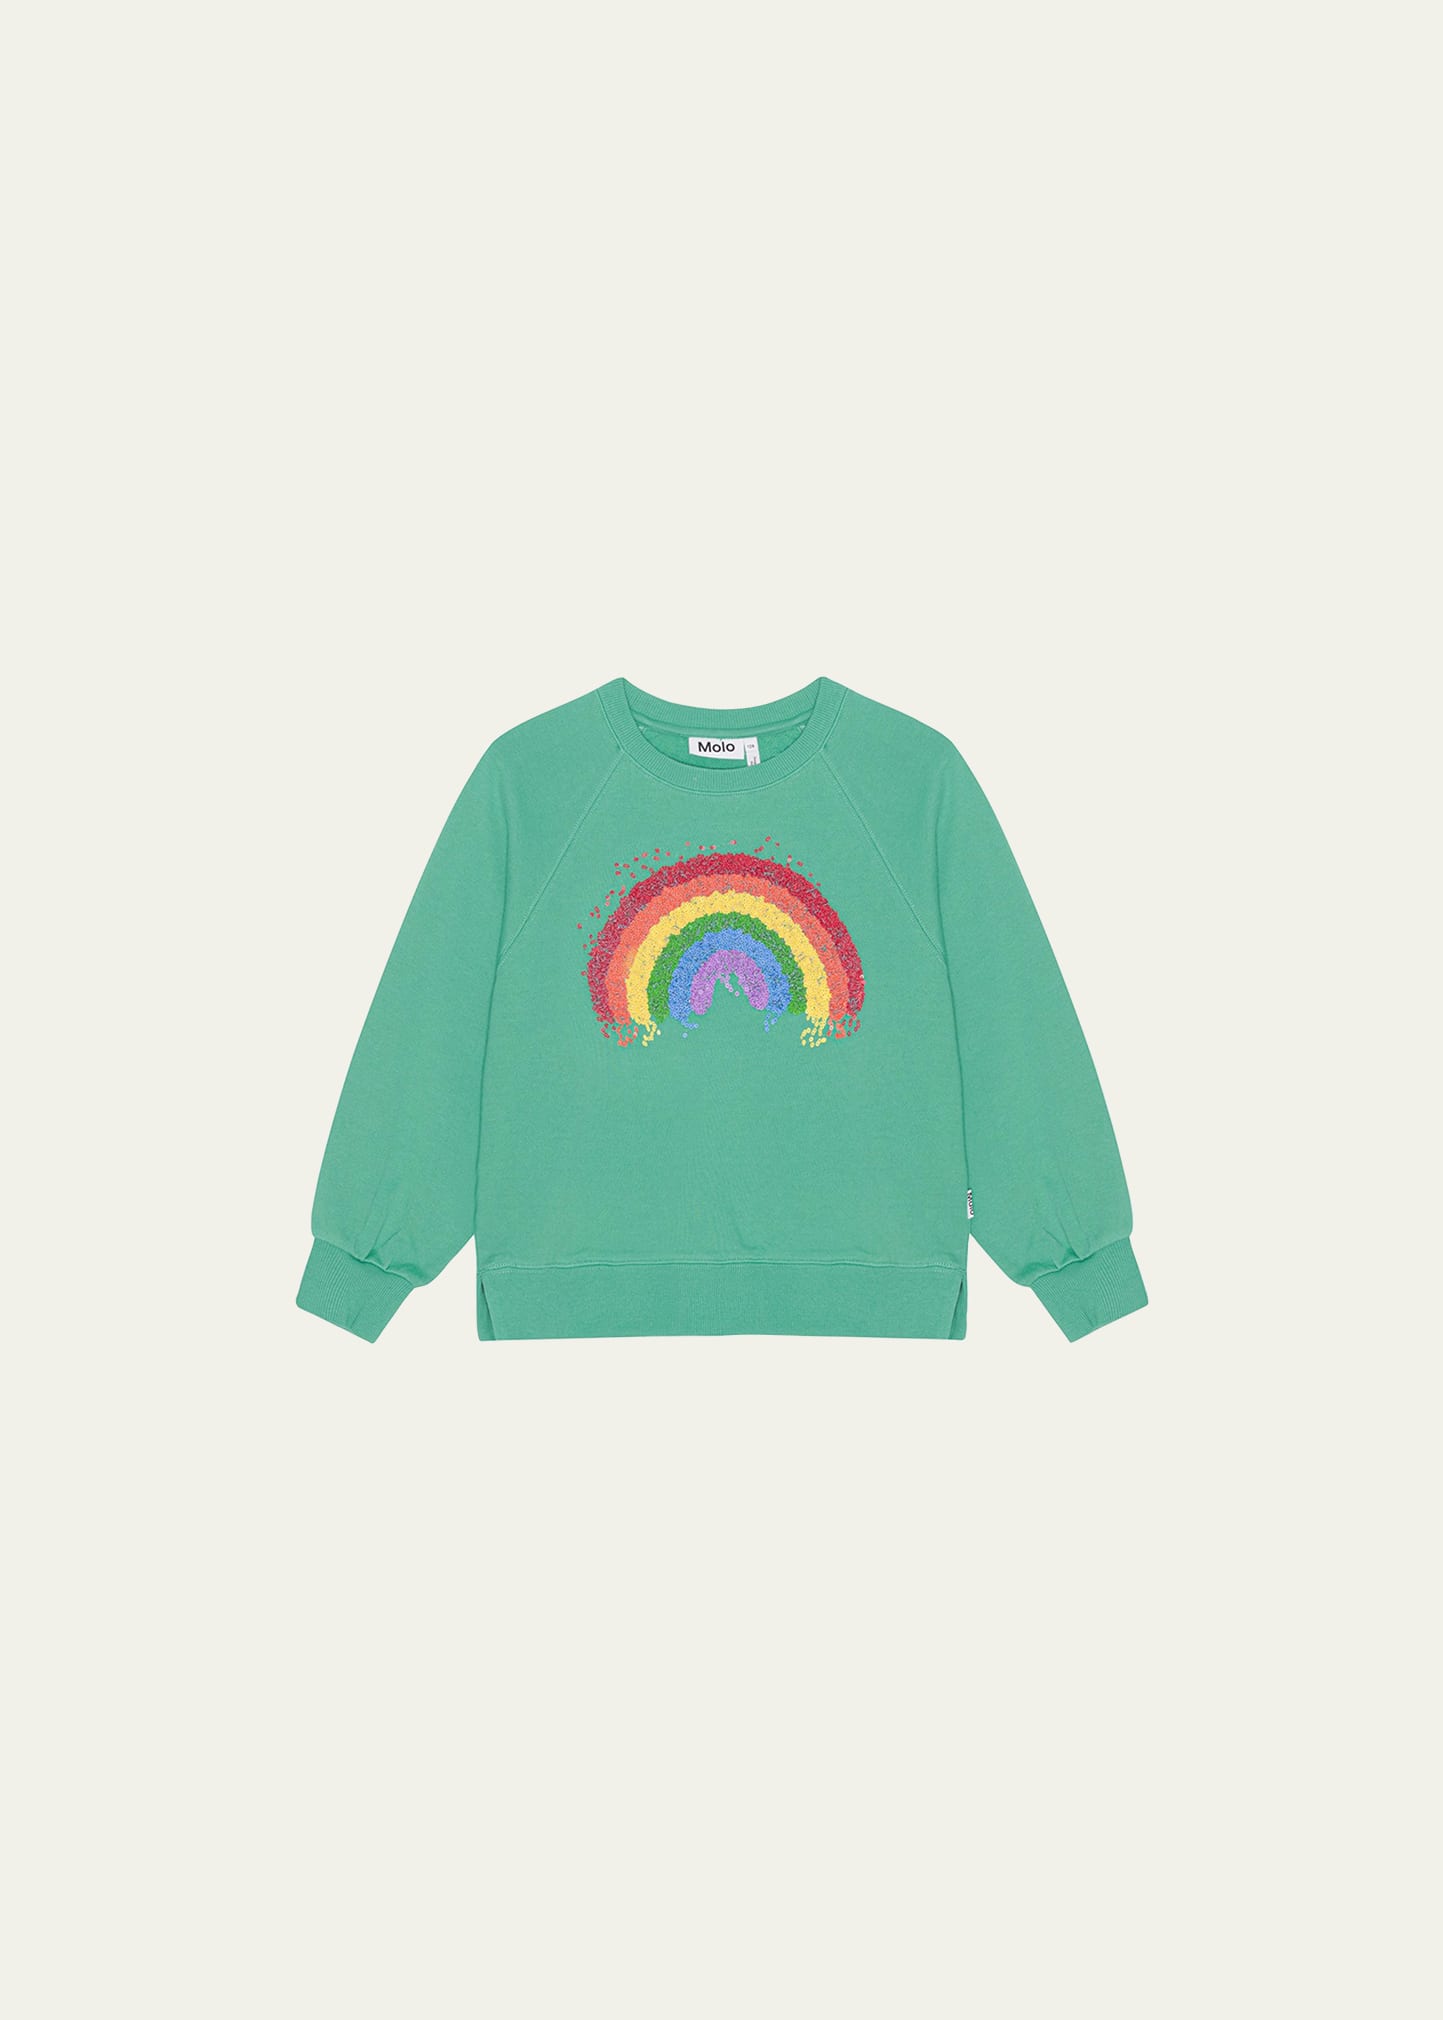 Girl's Marilee Rainbow Graphic Sweatshirt, Size 8-14